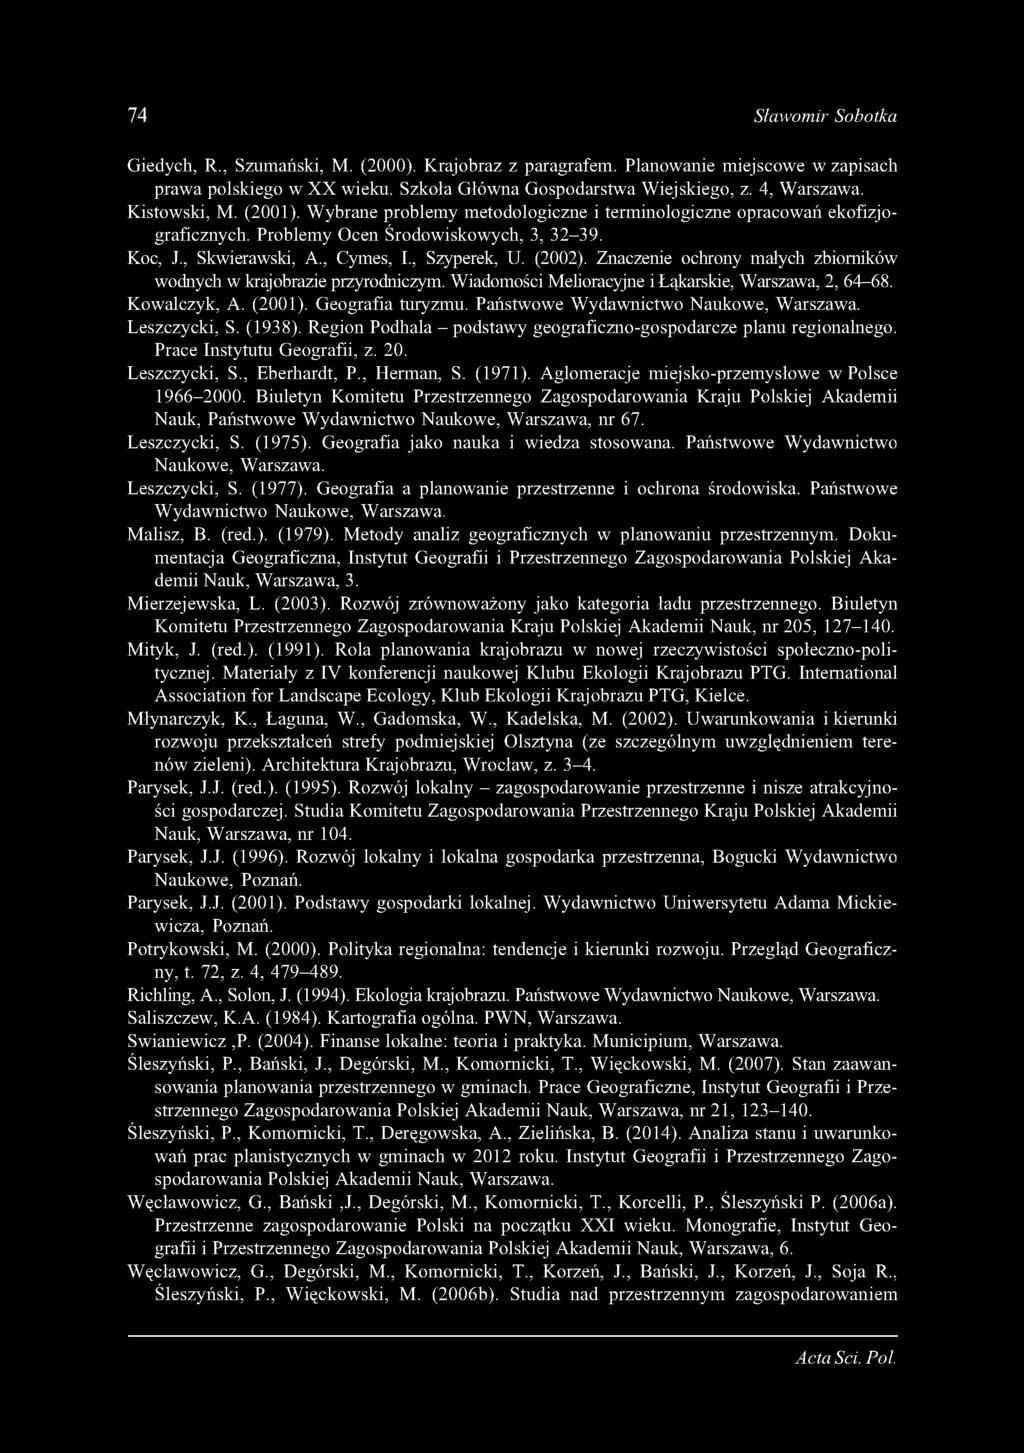 Znaczenie ochrony małych zbiorników wodnych w krajobrazie przyrodniczym. Wiadomości Melioracyjne i Łąkarskie, Warszawa, 2, 64-68. Kowalczyk, A. (2001). Geografia turyzmu.